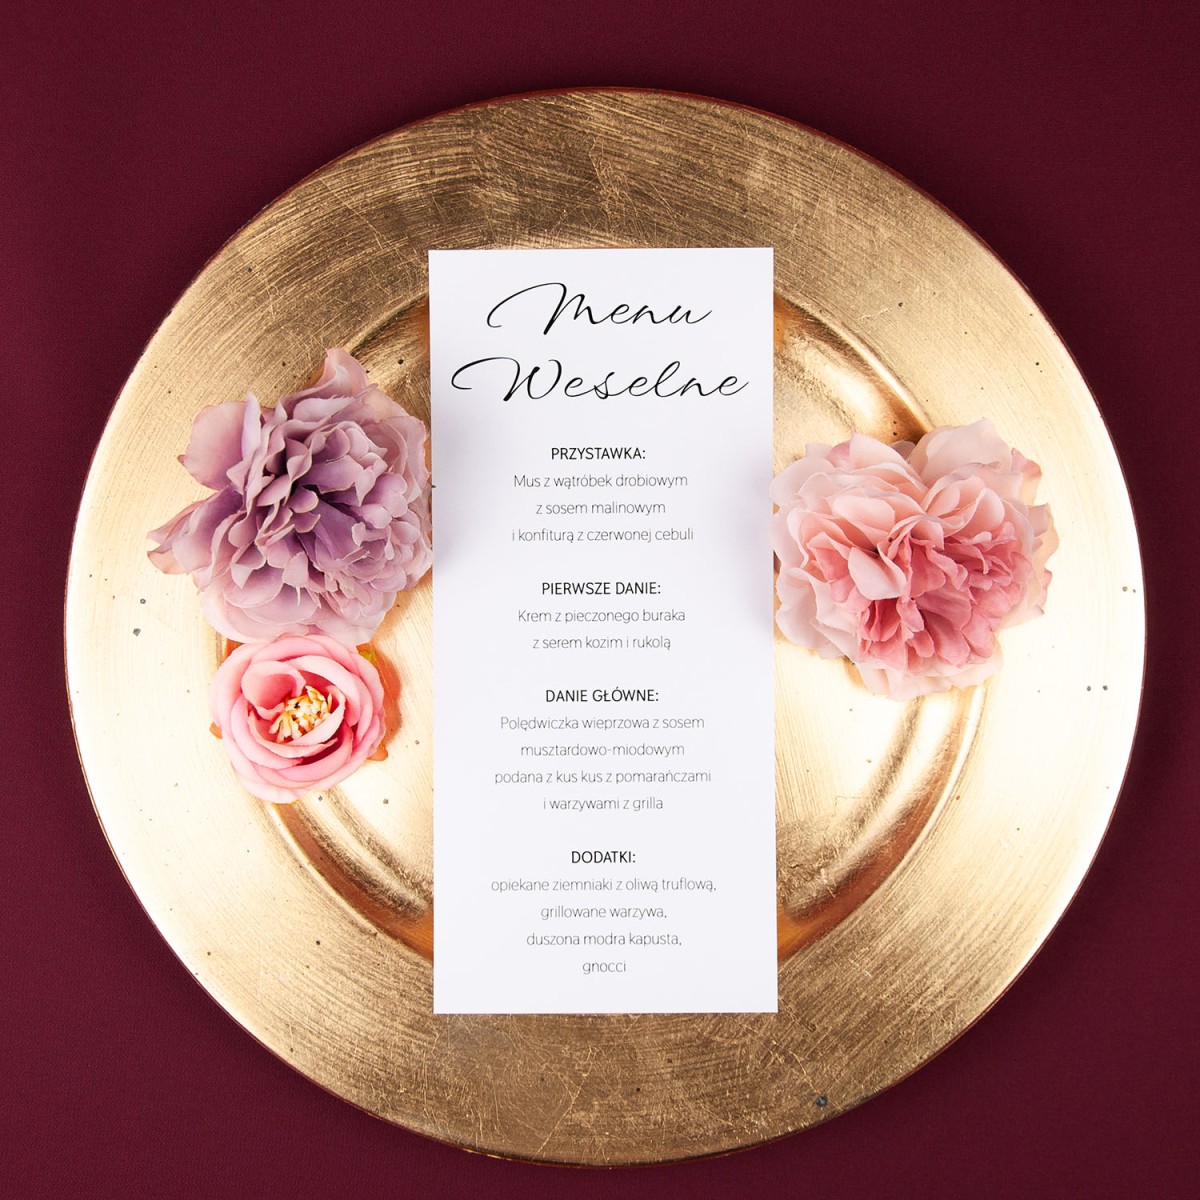 Minimalistyczne menu weselne jednokartowe - Whiteness, Photo Case